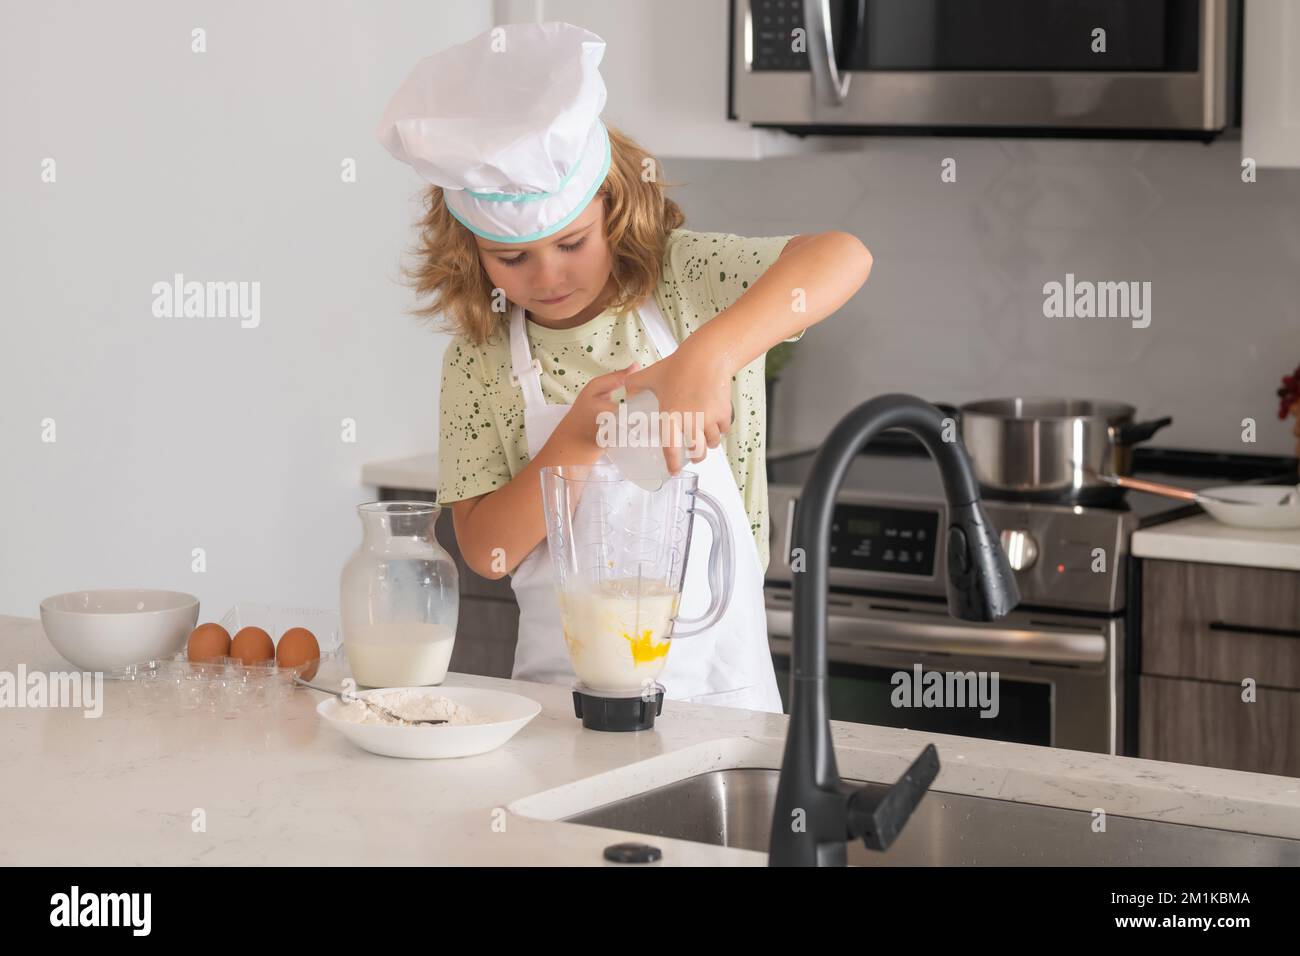 El cocinero del cocinero del cabrito está aprendiendo cómo hacer una torta en la cocina casera. Niño haciendo sabroso delicioso. Huevos, leche y harina Ingredientes para hornear galletas o. Foto de stock